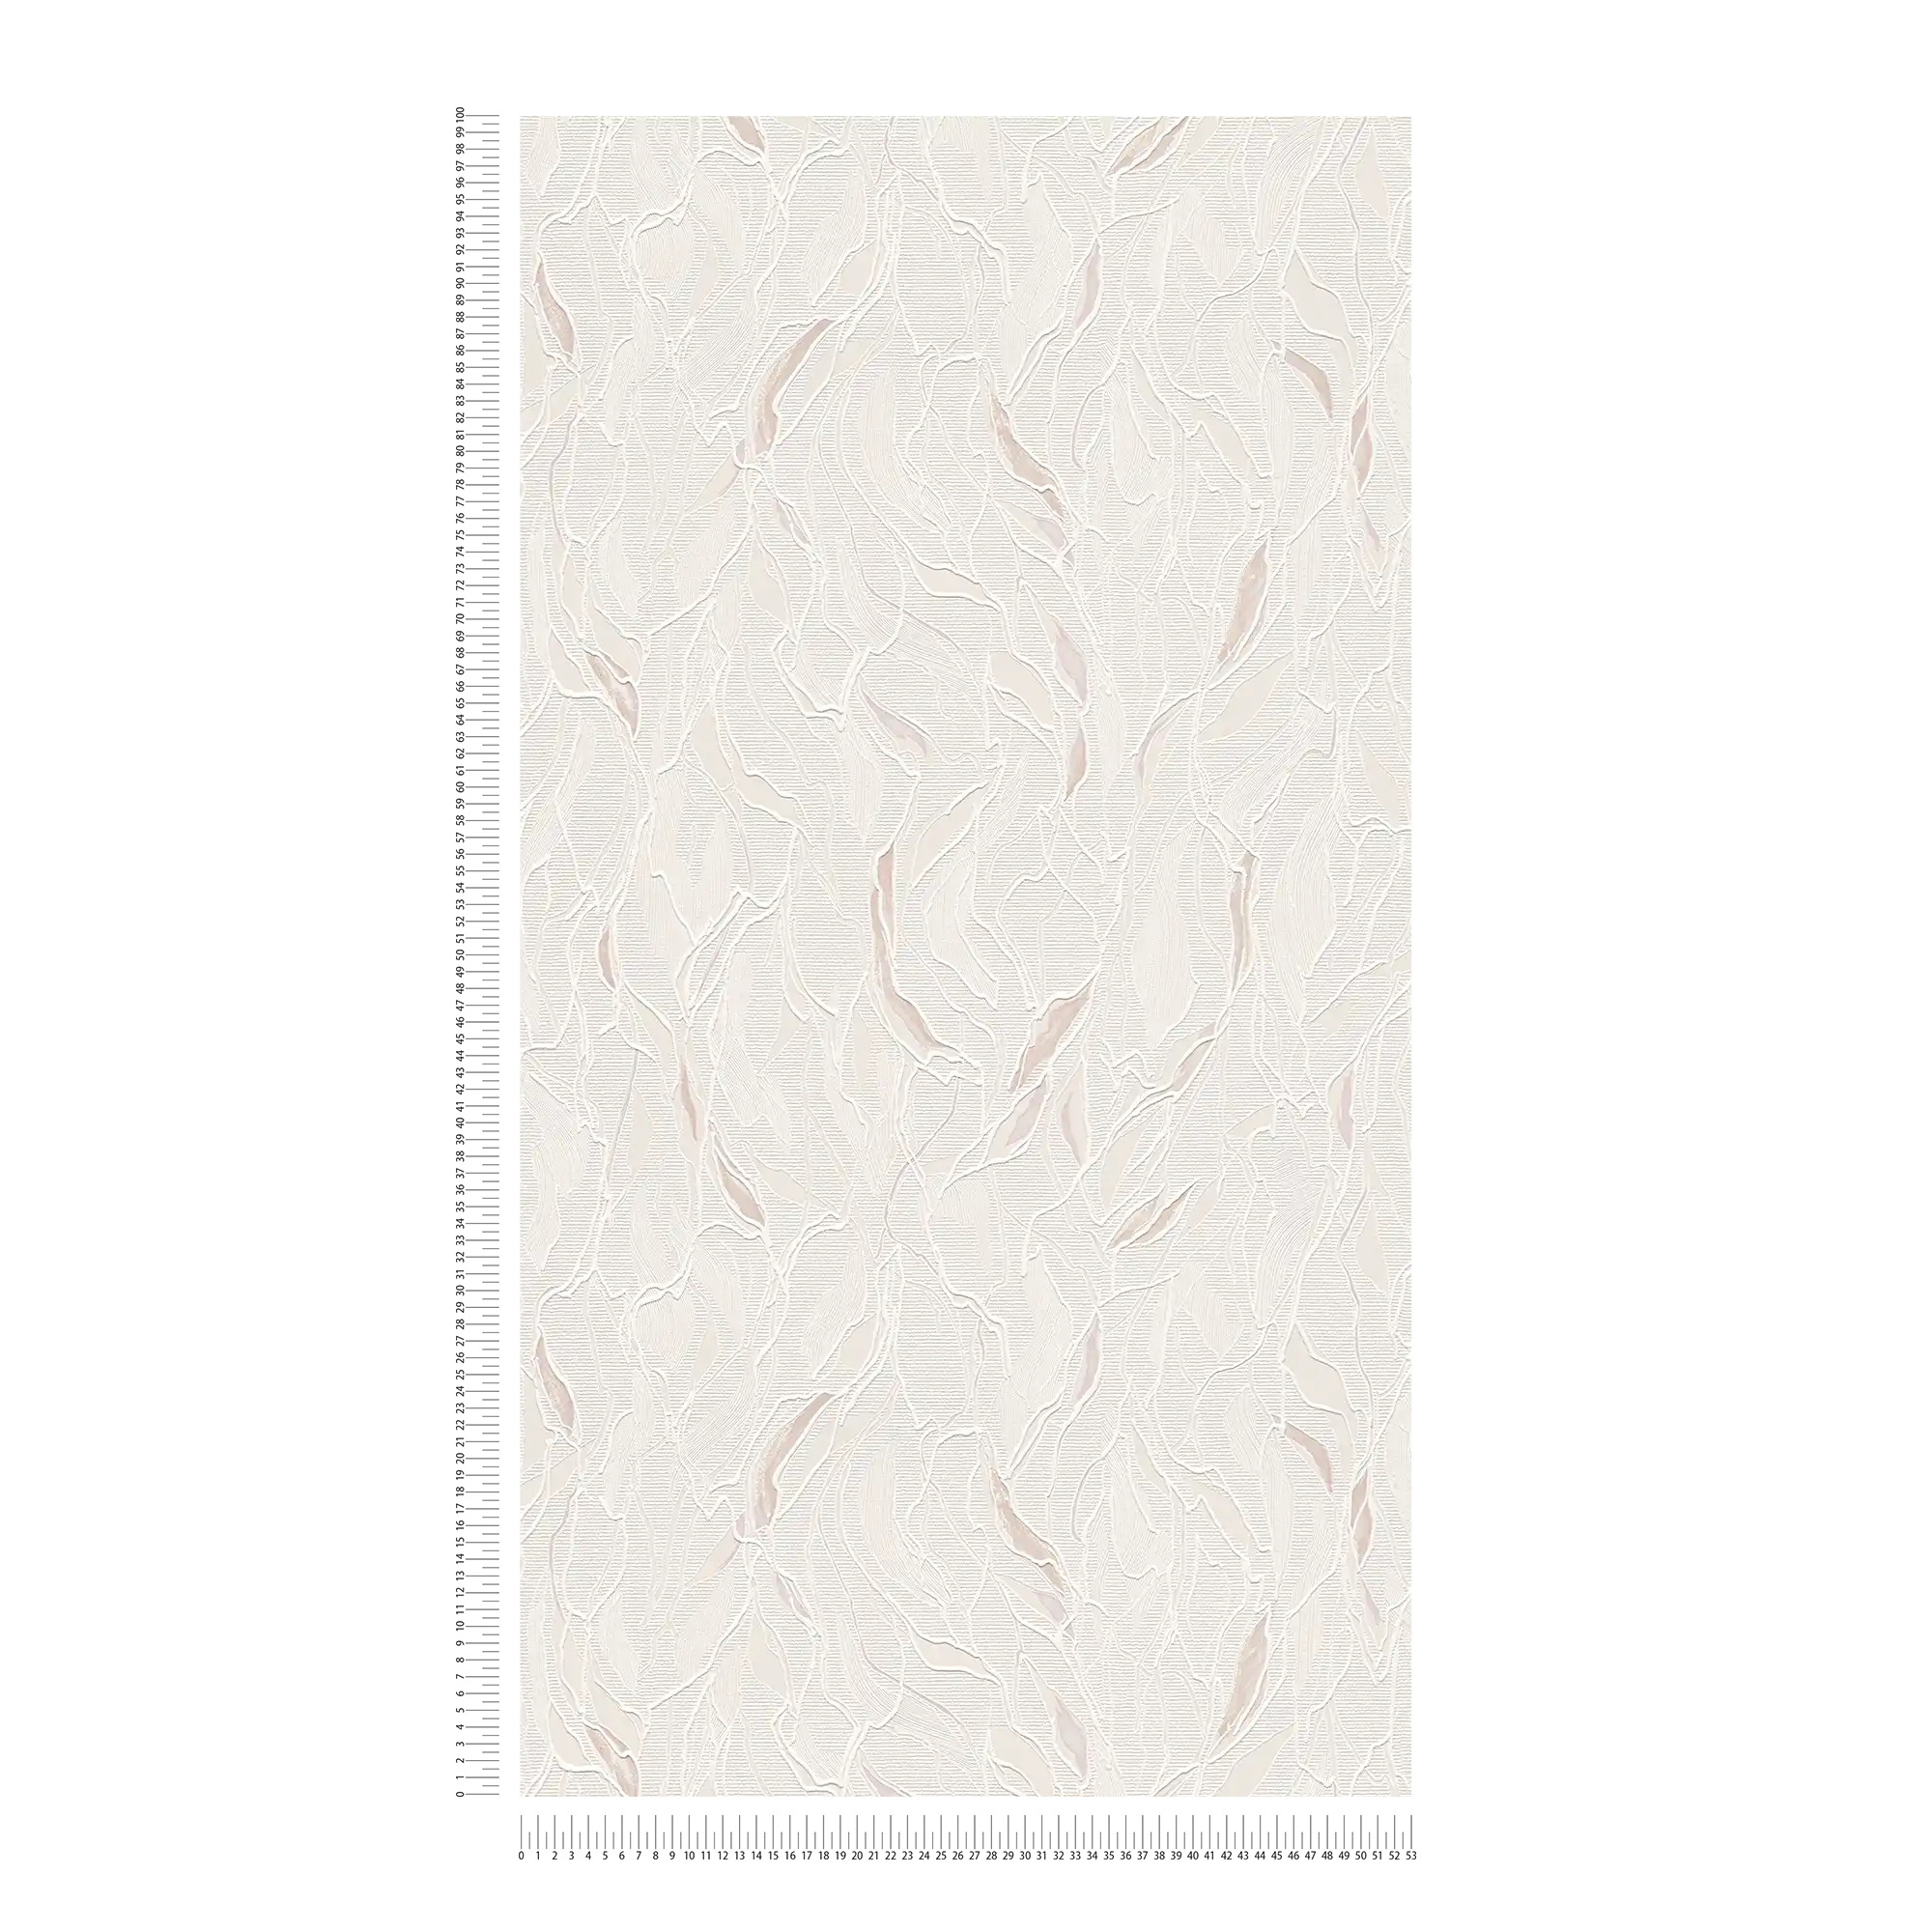             Carta da parati astratta con struttura in rilievo e schiuma - metallizzata, bianca
        